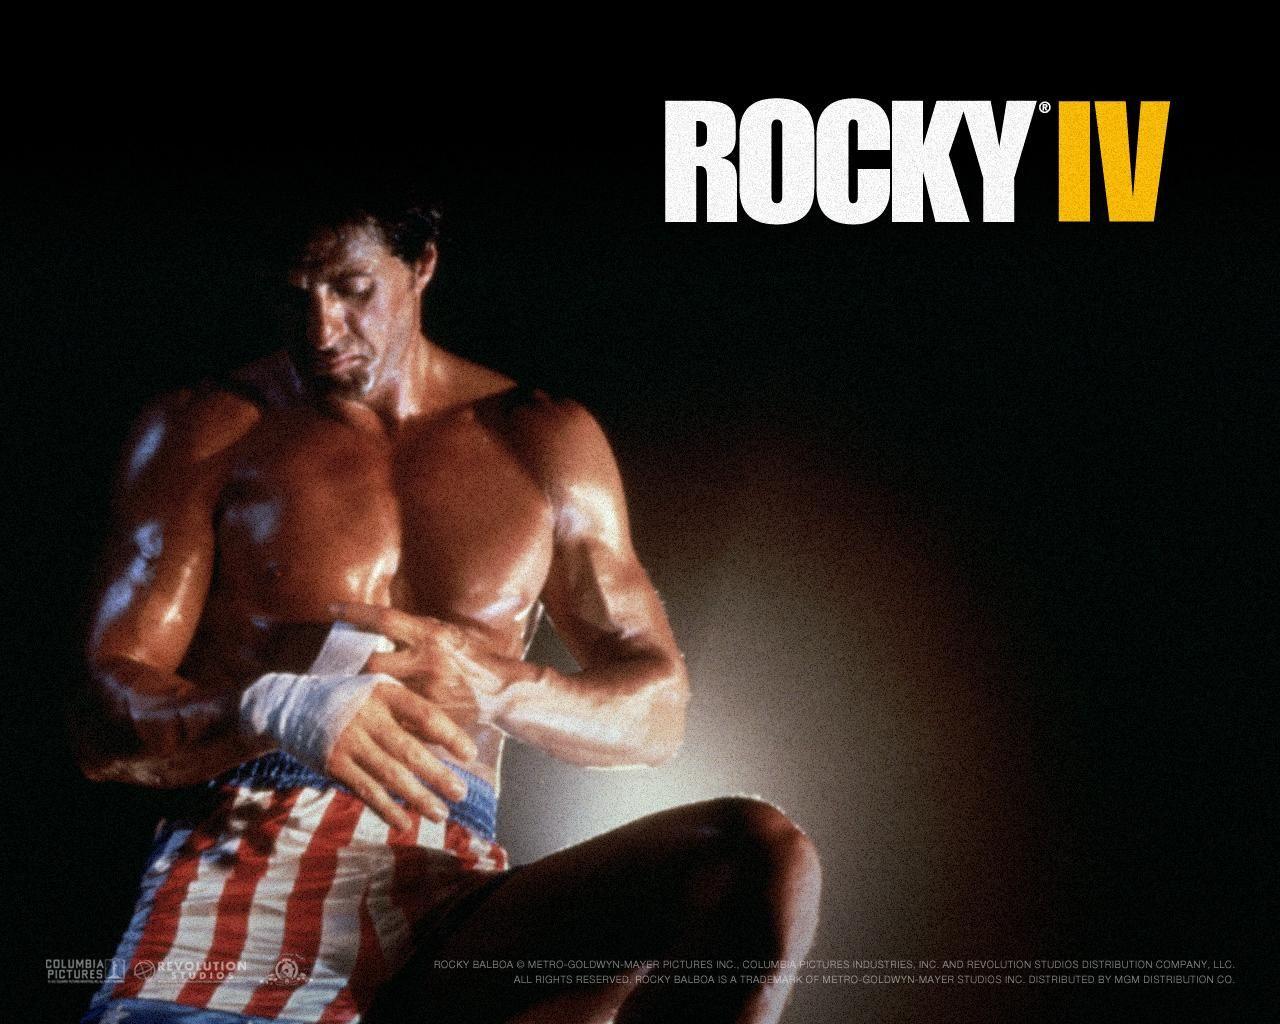 Rocky IV. Love the soundtrack workouts. Motivating!. After